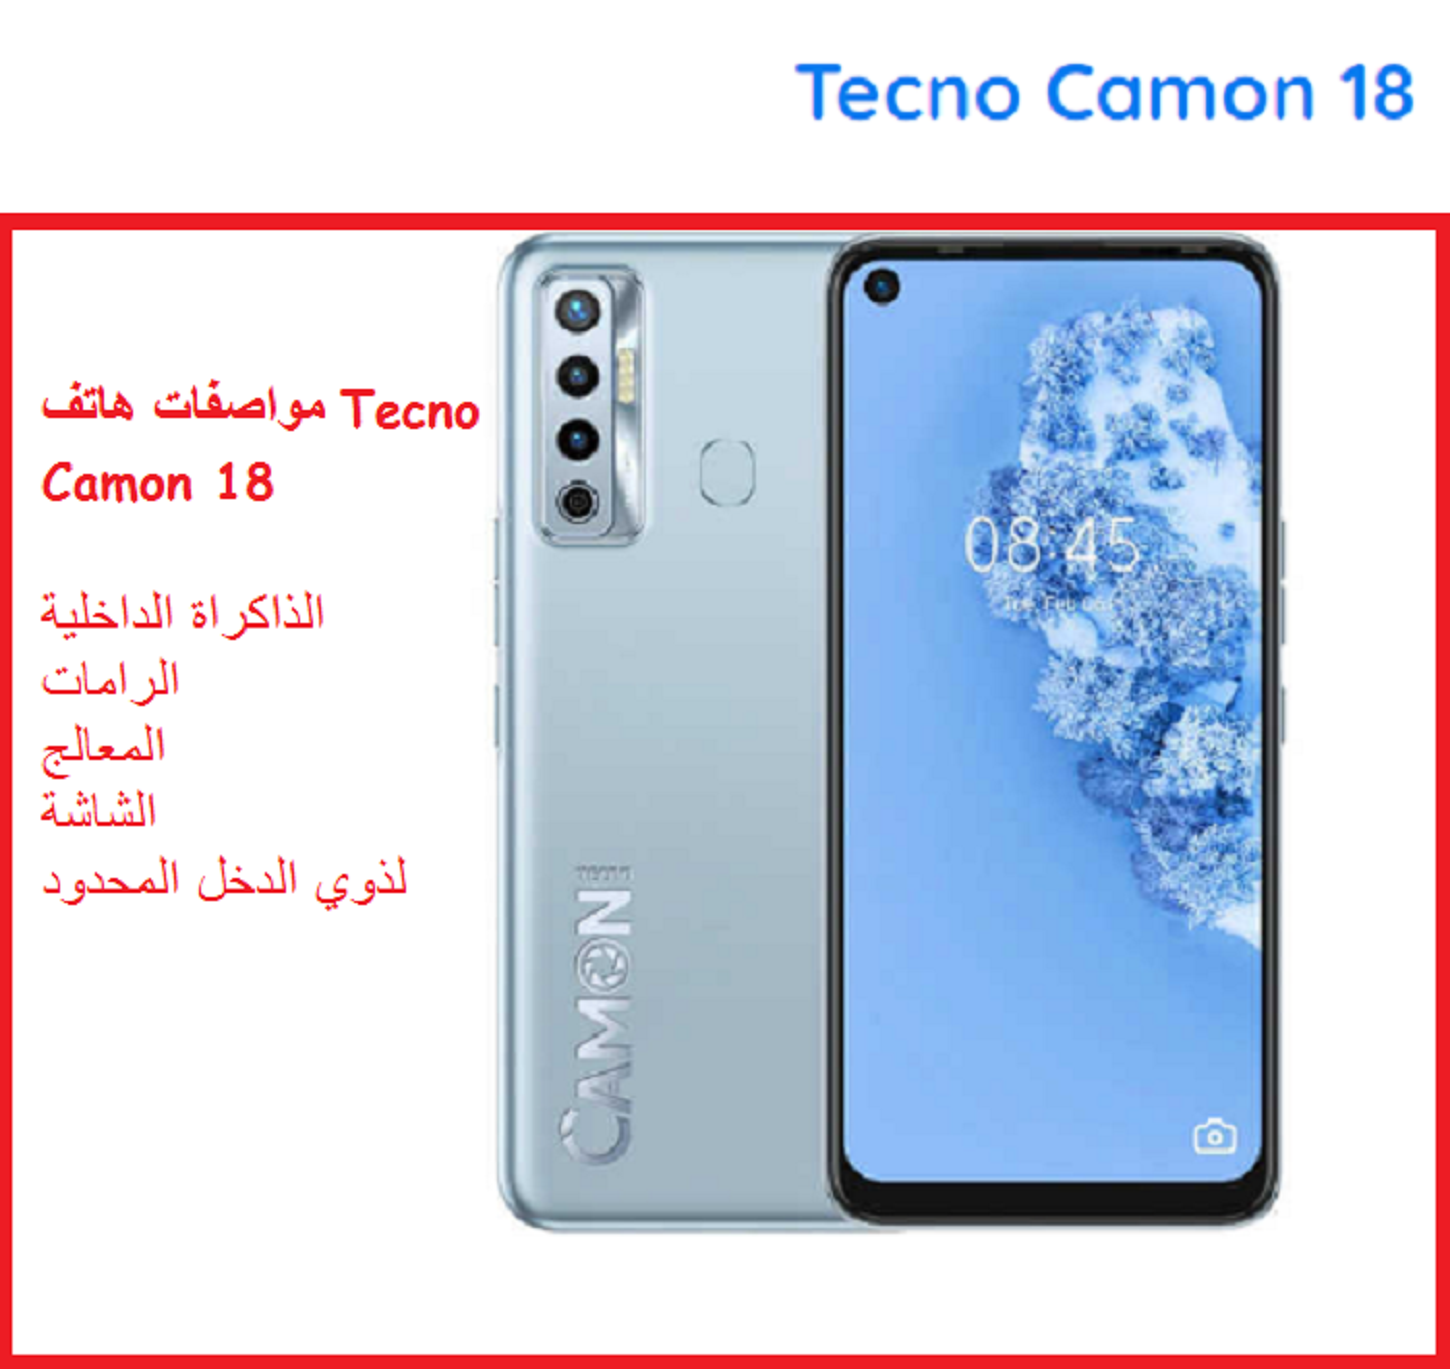 سعر ومواصفات هاتف Tecno Camon 18 لذوي الدخل المحدود